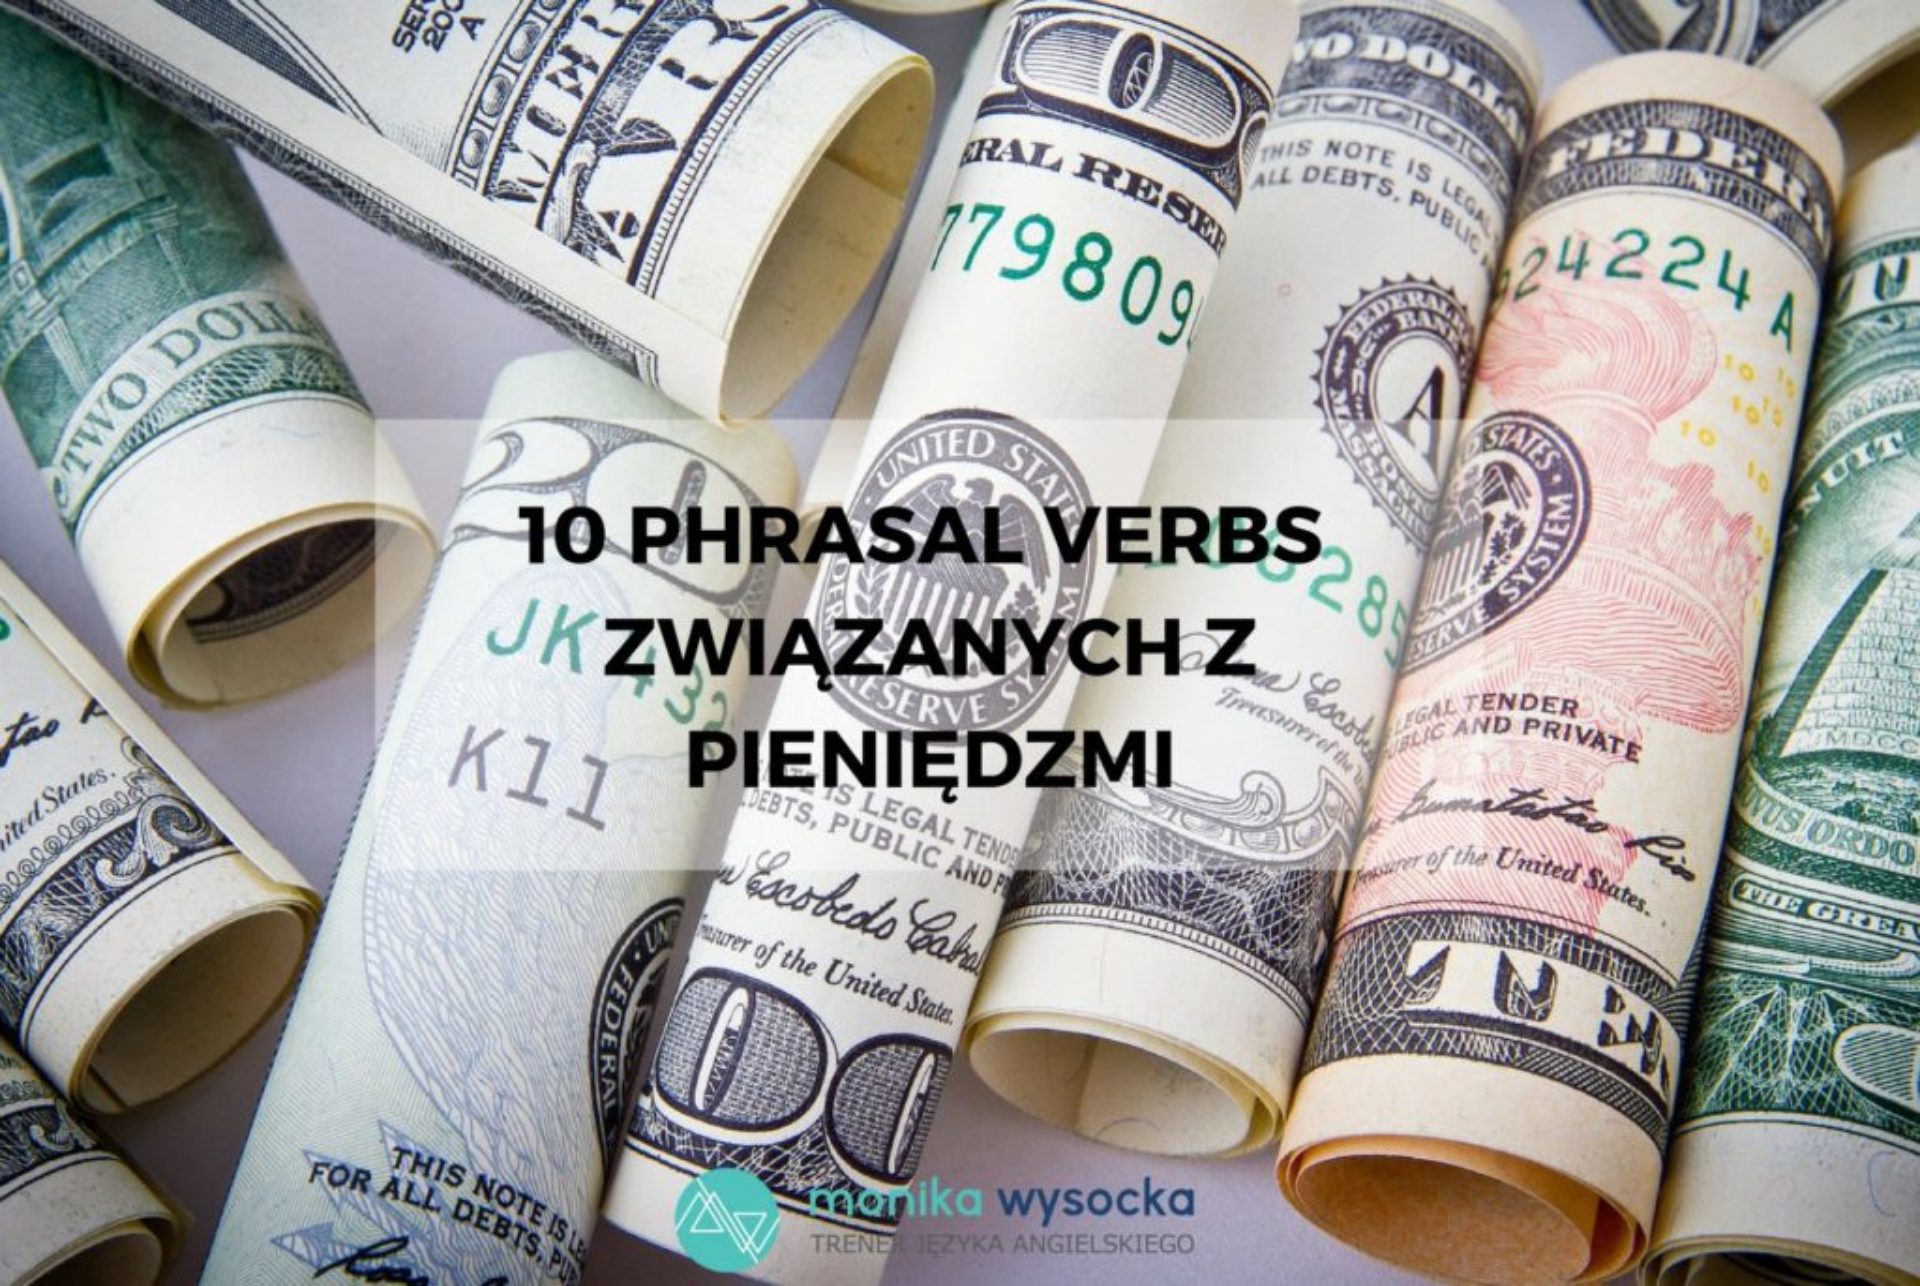 10 phrasal verbs związanych z pieniędzmi.